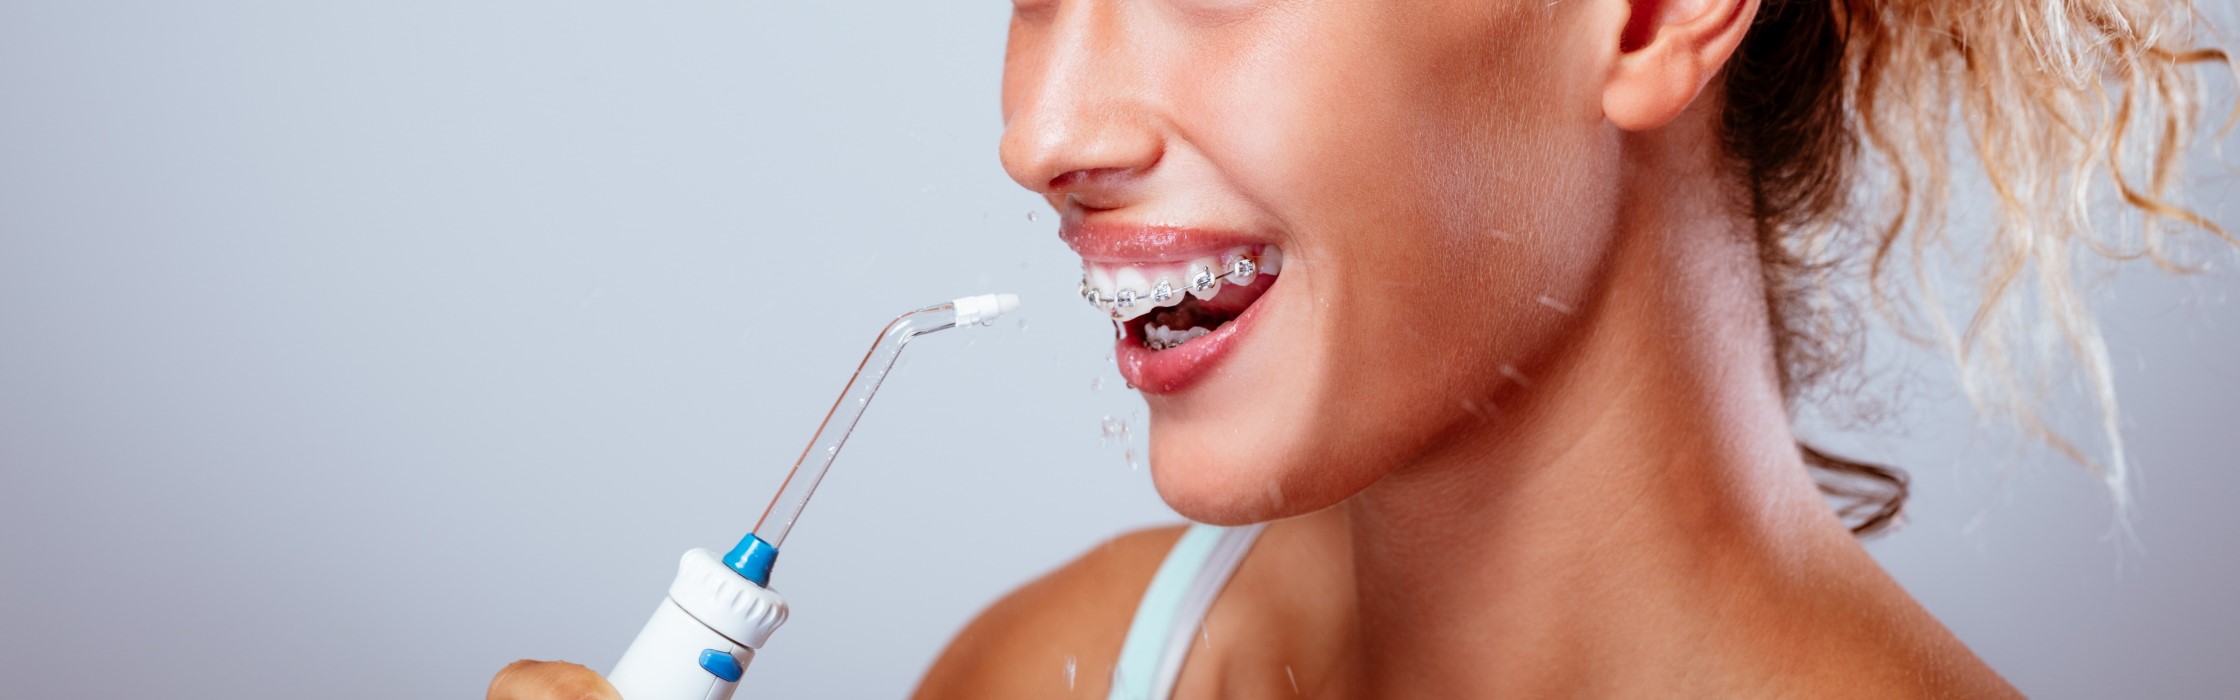 Munddusche: So ergänzen Sie die heimische Mundpflege